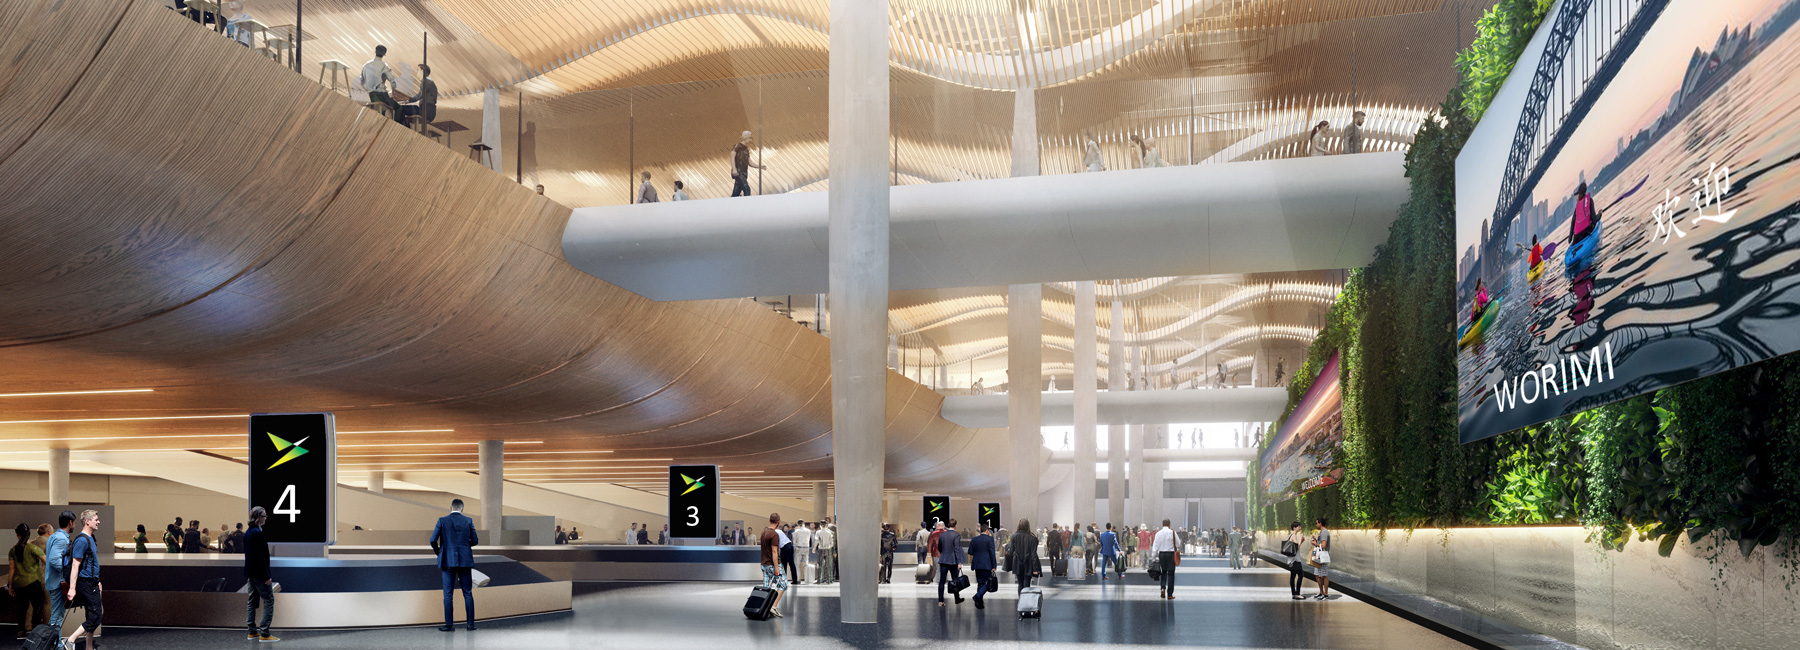 Zaha Hadid Architects Cox Architecture Win Bid To Build